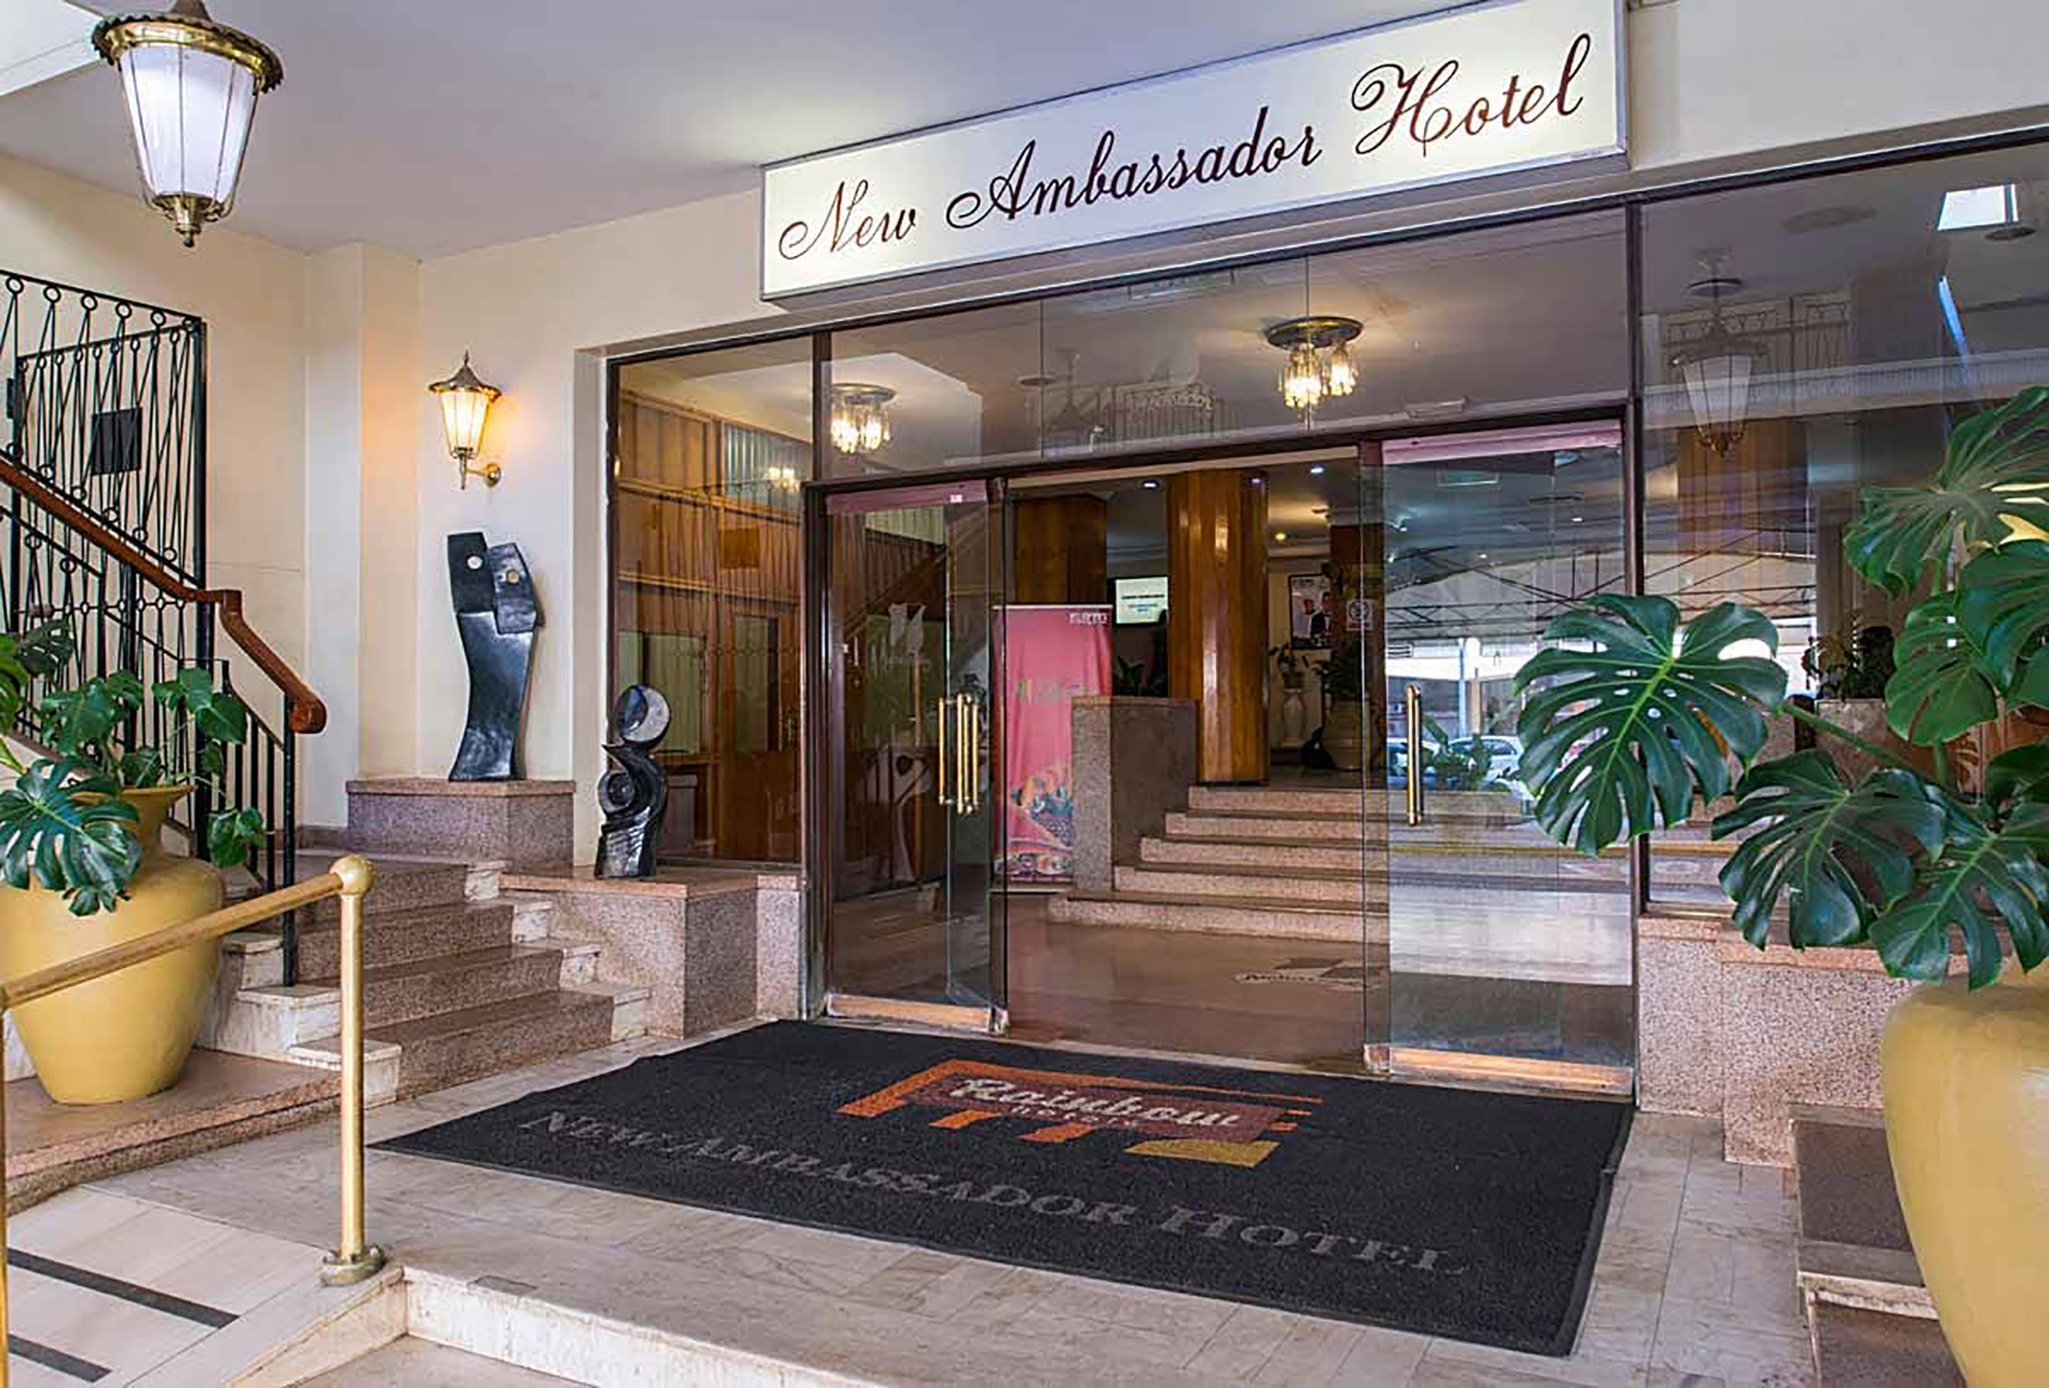 New Ambassador Hotel image